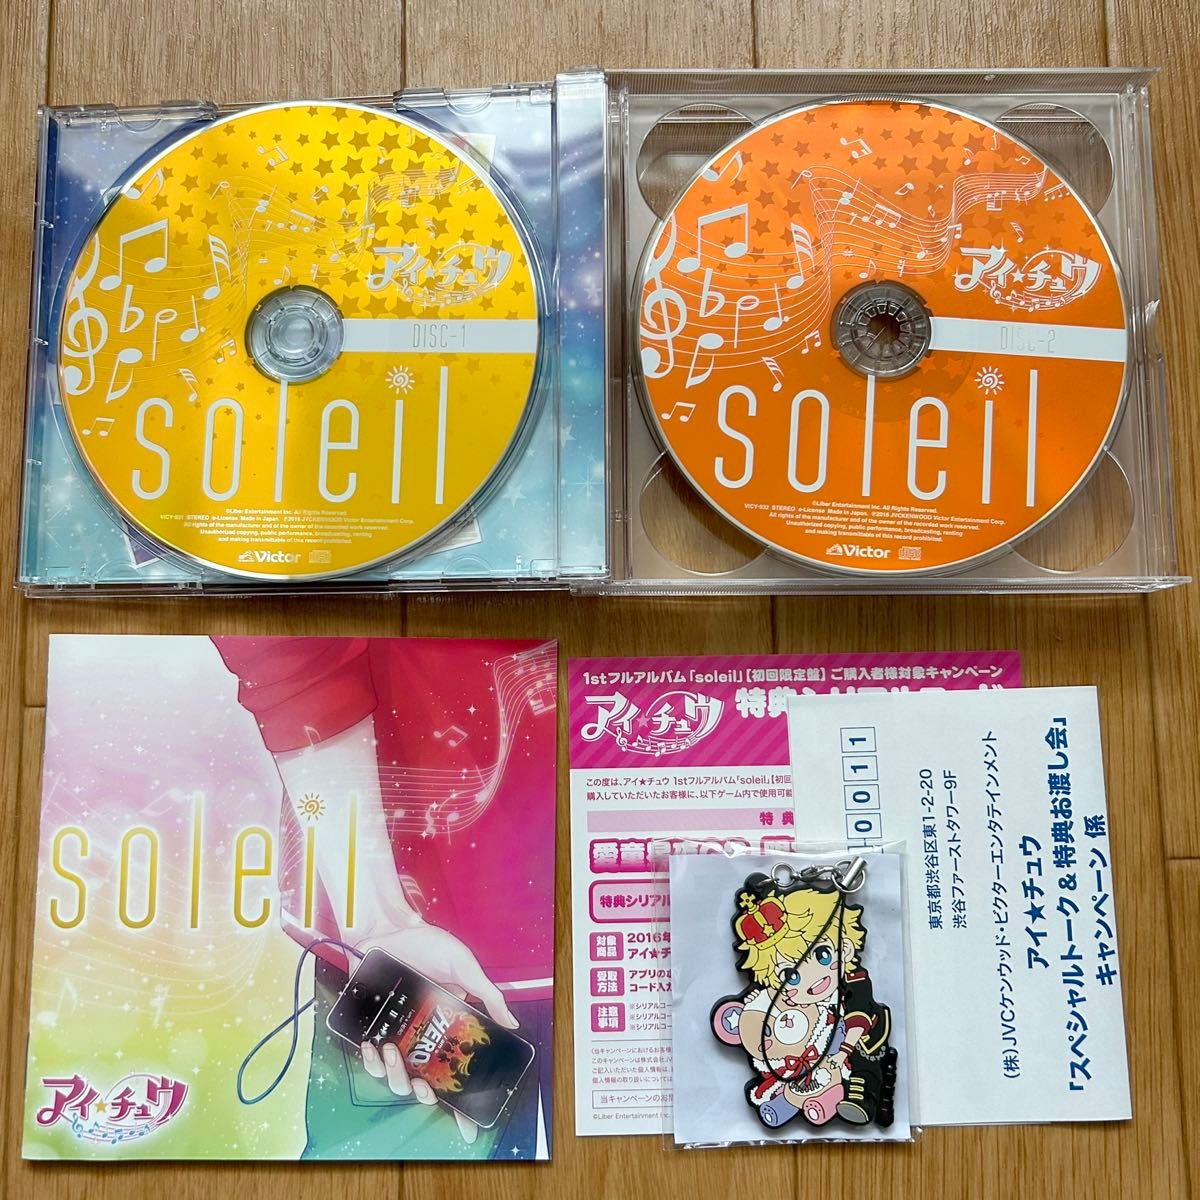 アイ★チュウ soleil 初回限定盤 CD アルバム アイチュウ グッズ付き限定盤